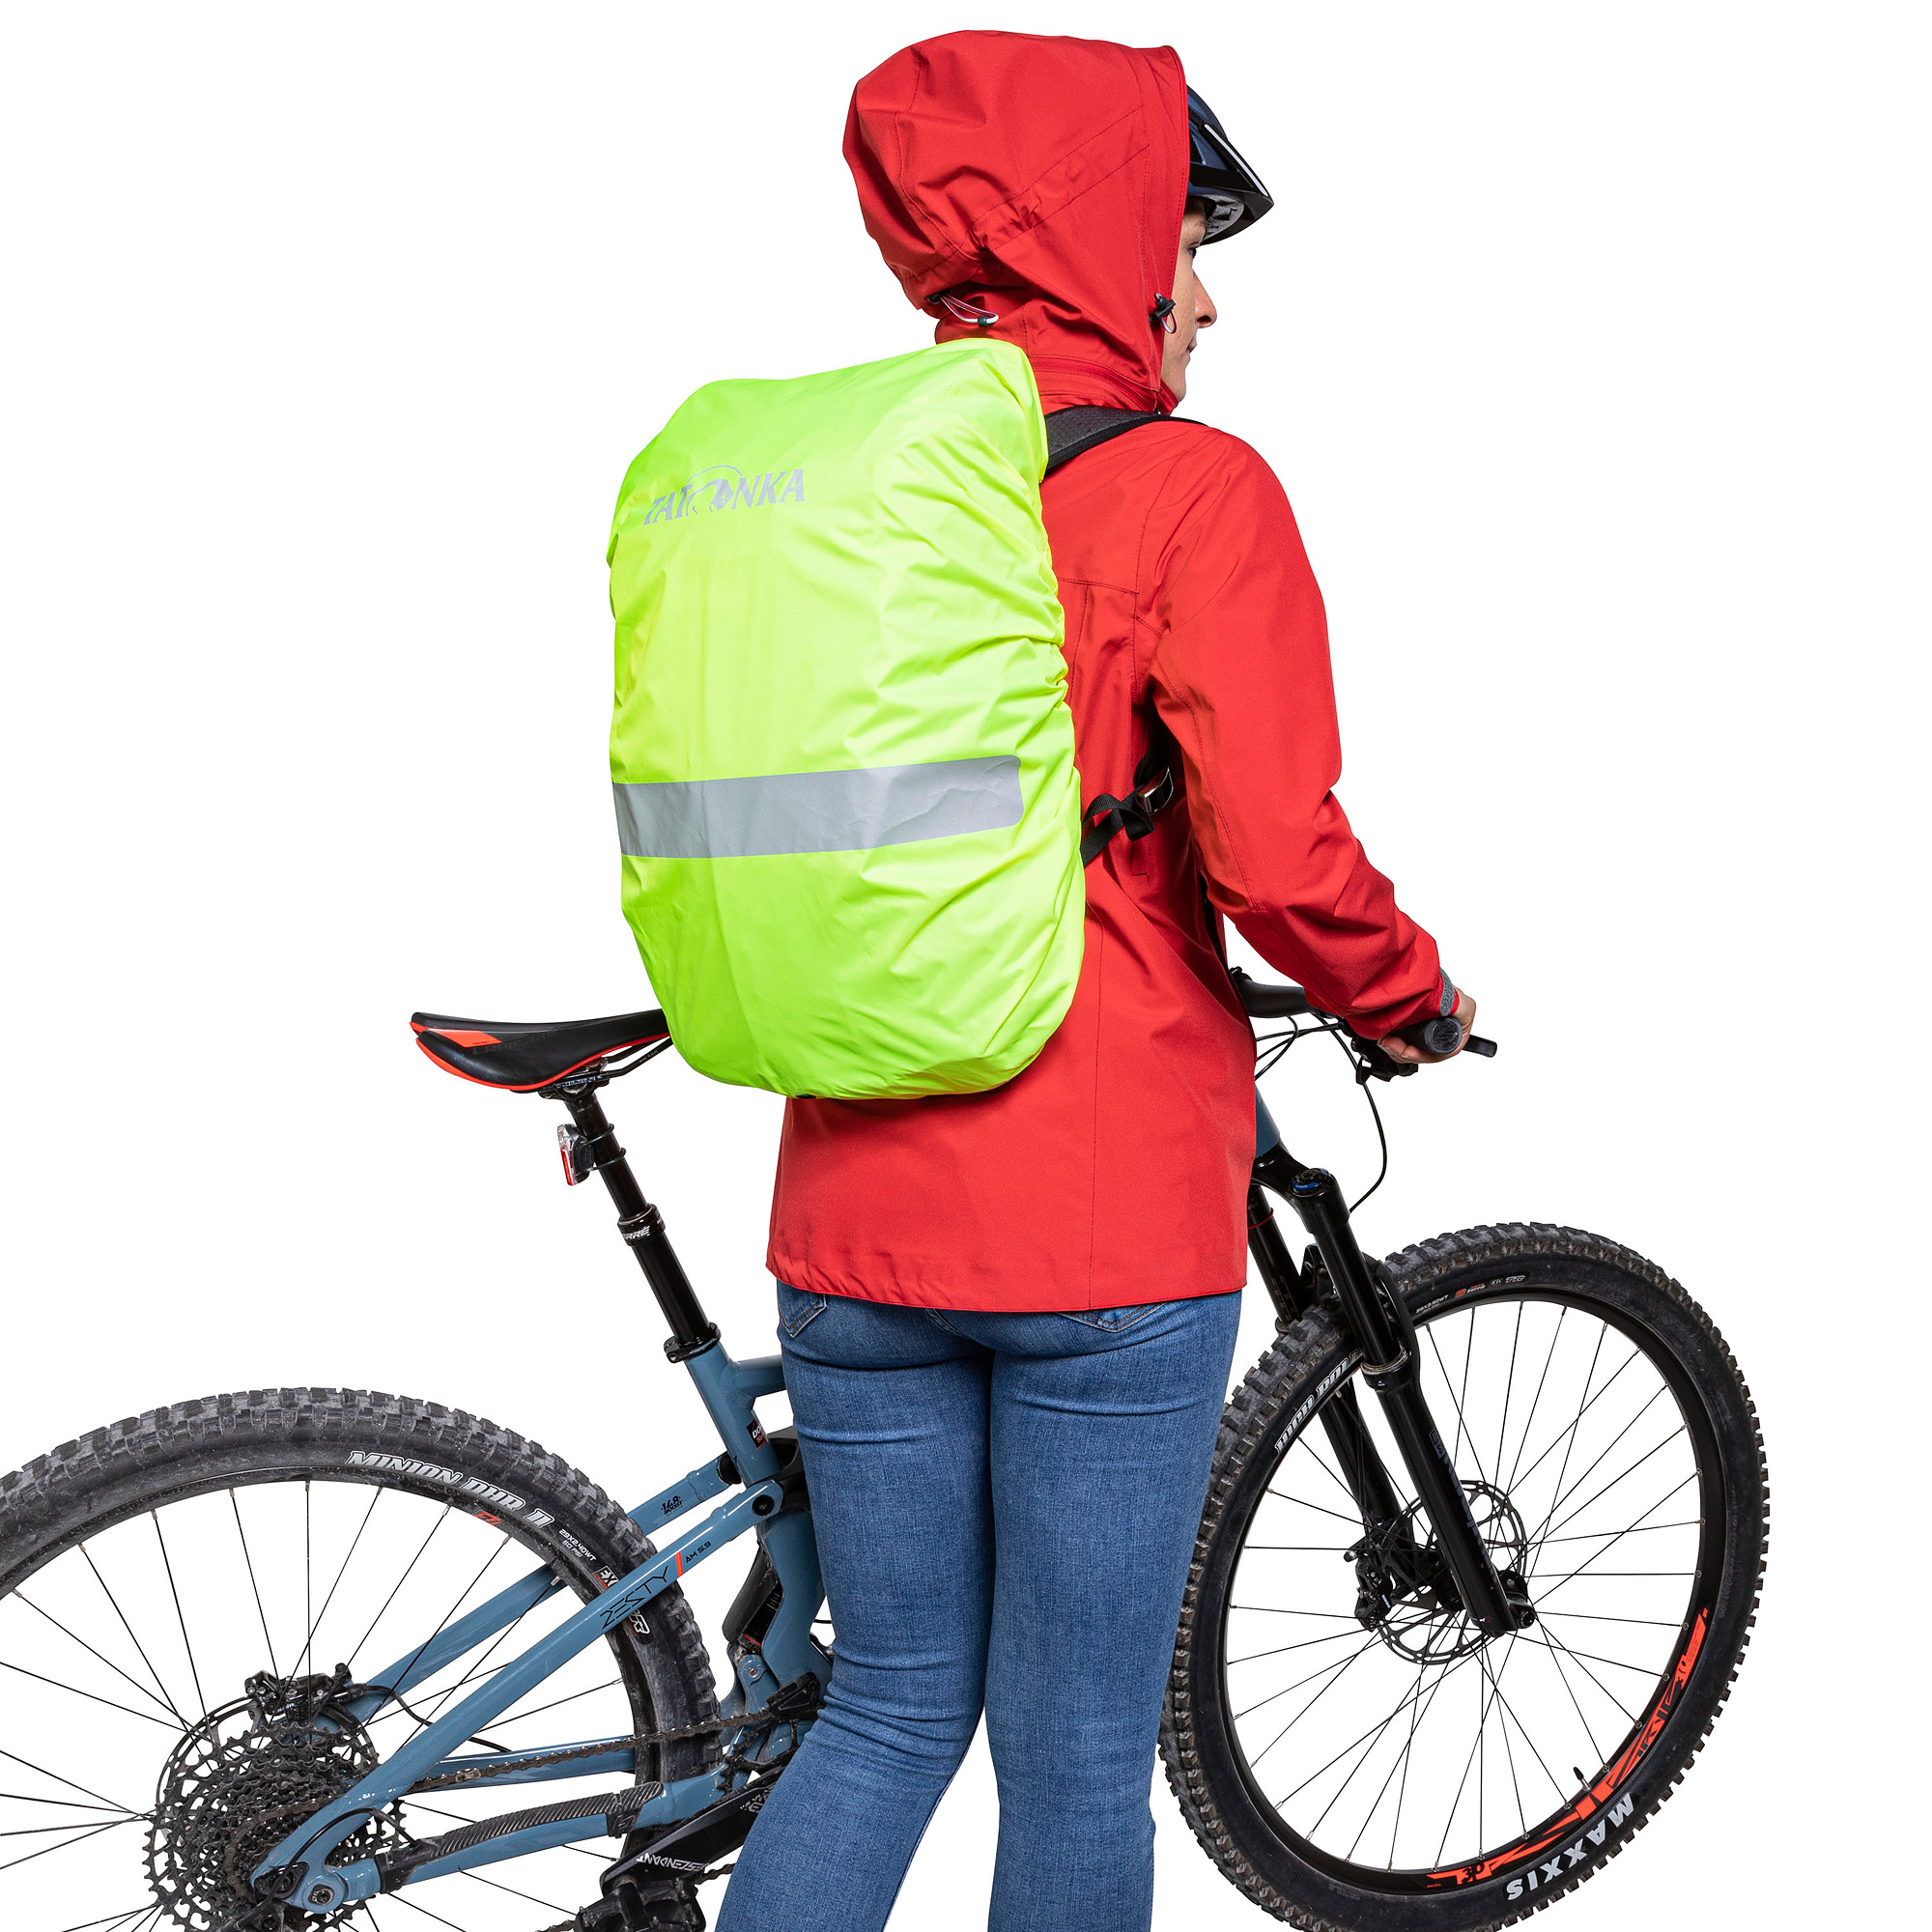 Tatonka Raincover Bike Daypack safety yellow gelb Rucksack-Zubehör 4013236373189